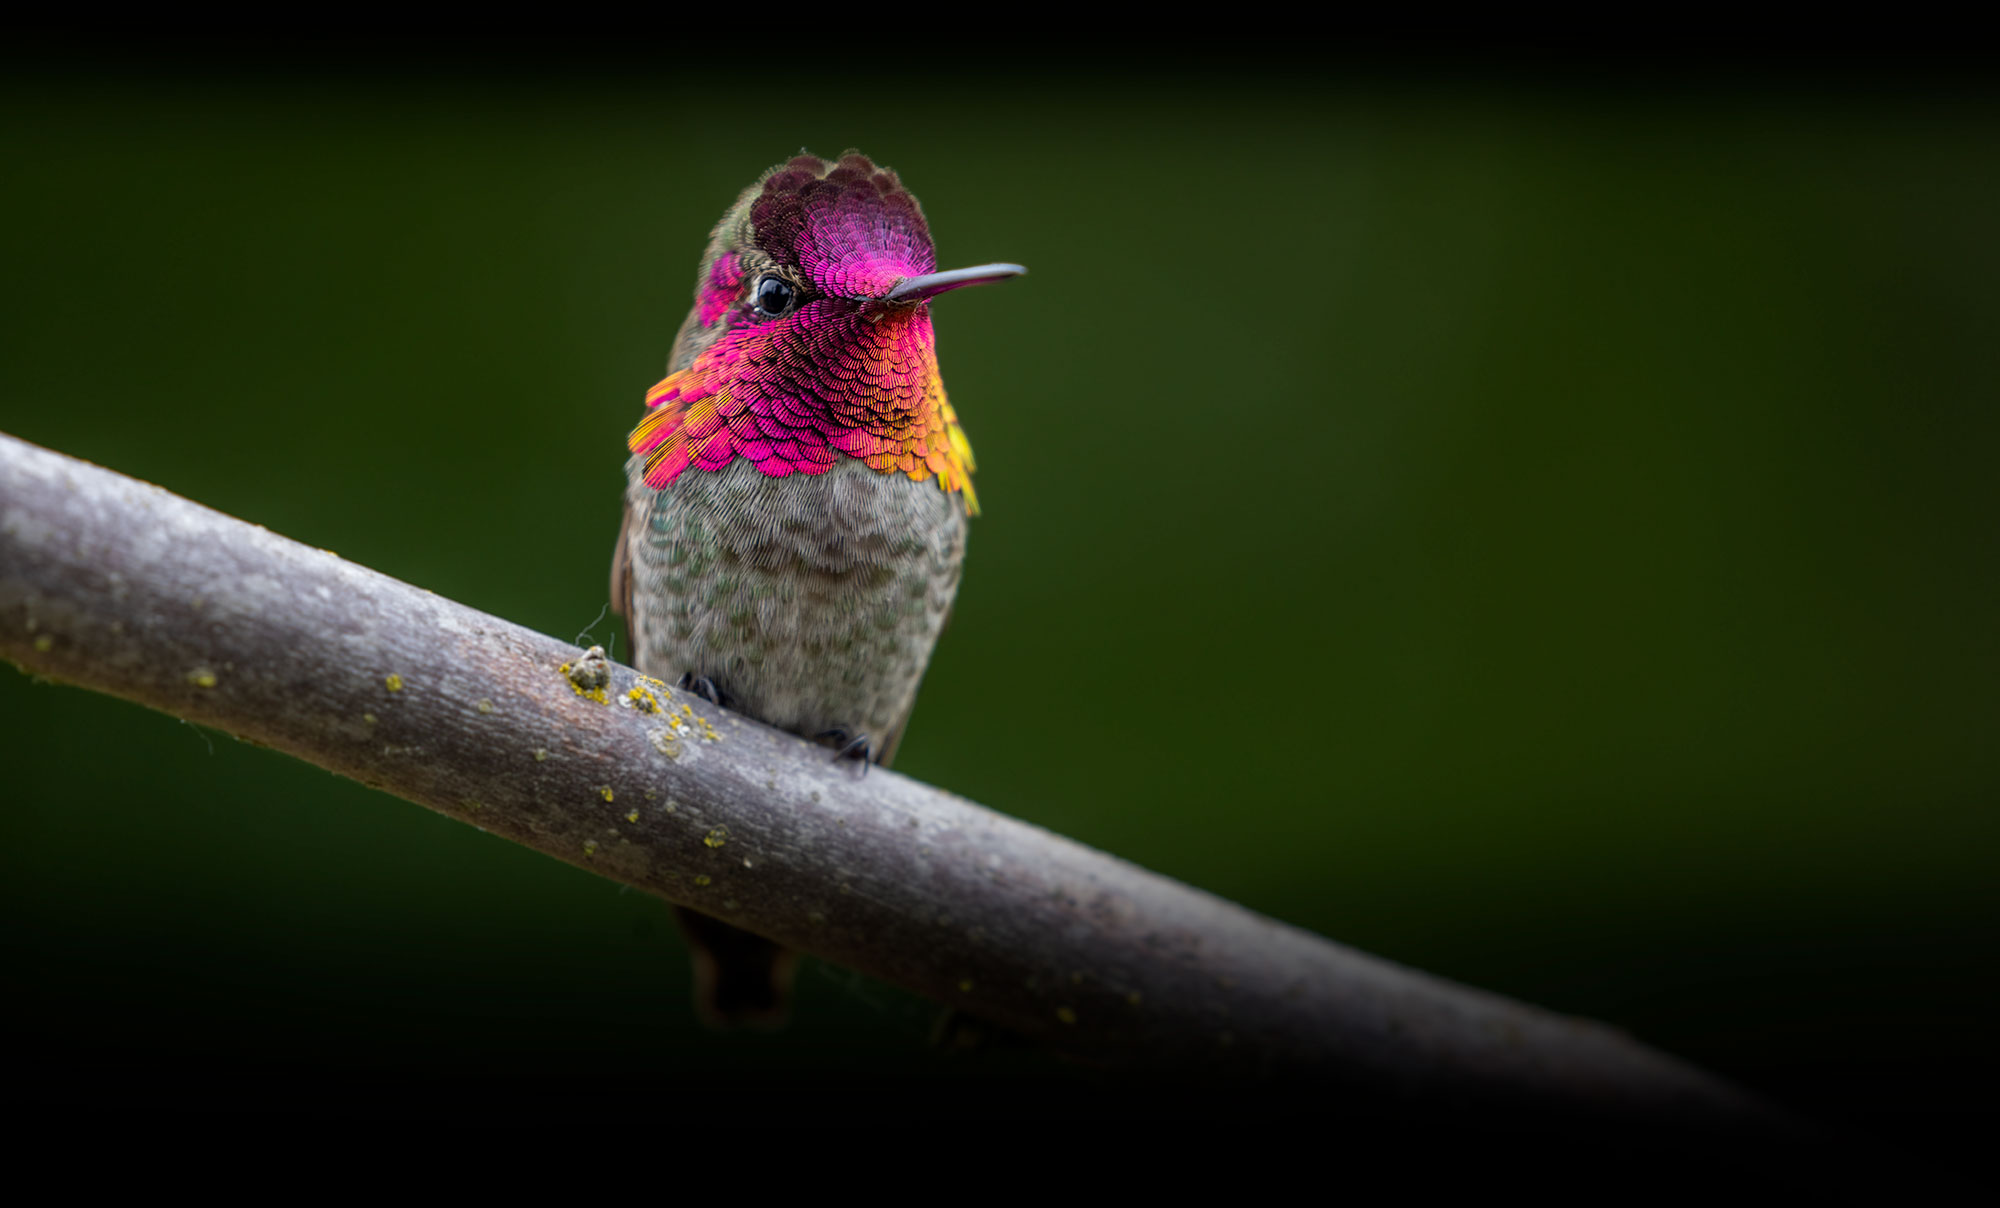 Photograph of an Anna's Hummingbird